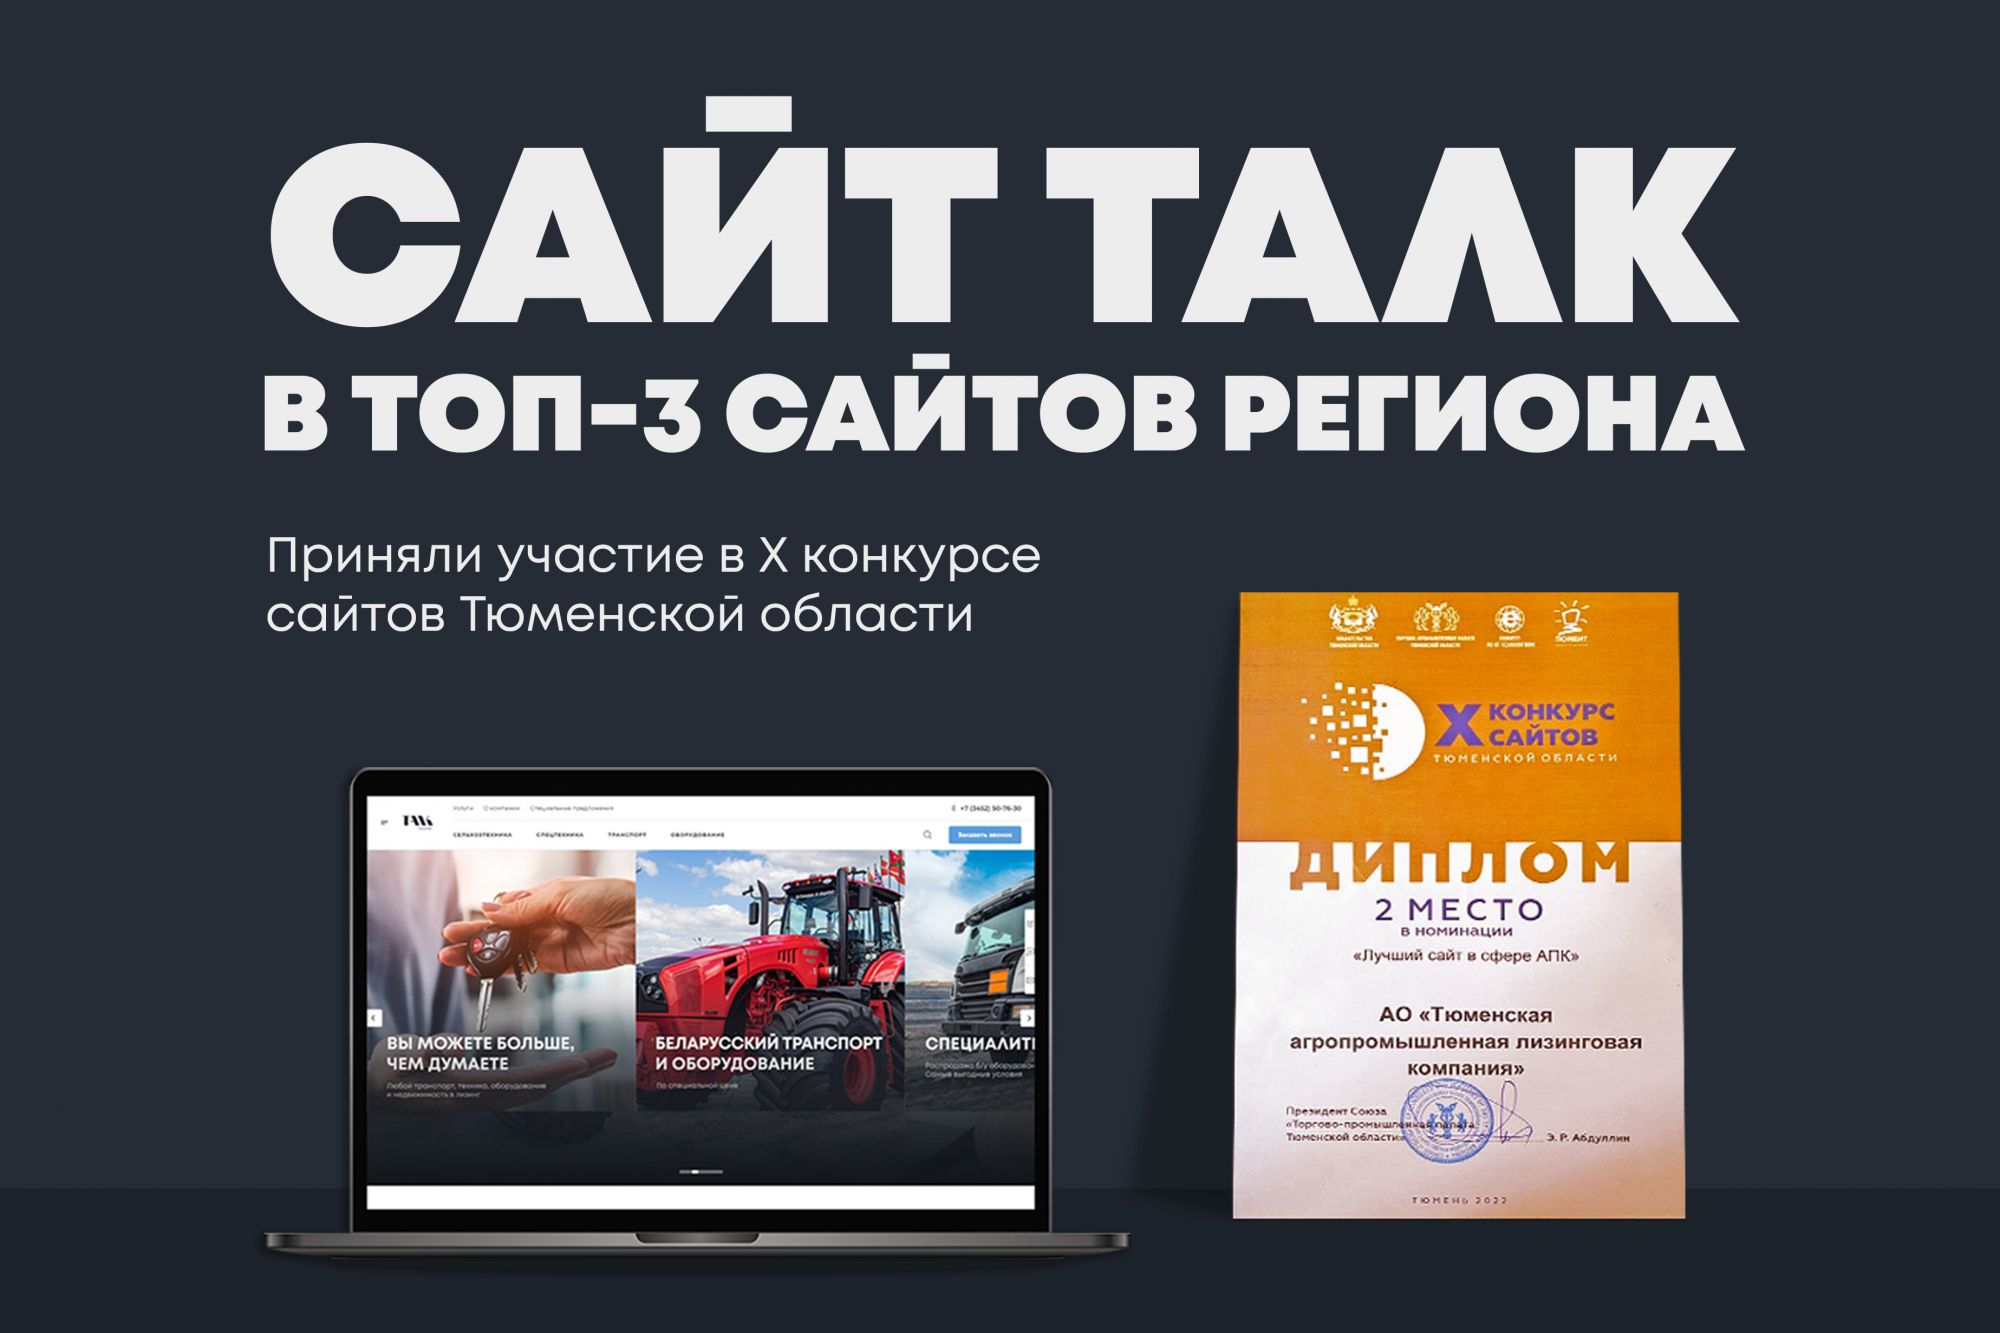 Самые популярные сайты Рунета – рейтинг и критерии выбора